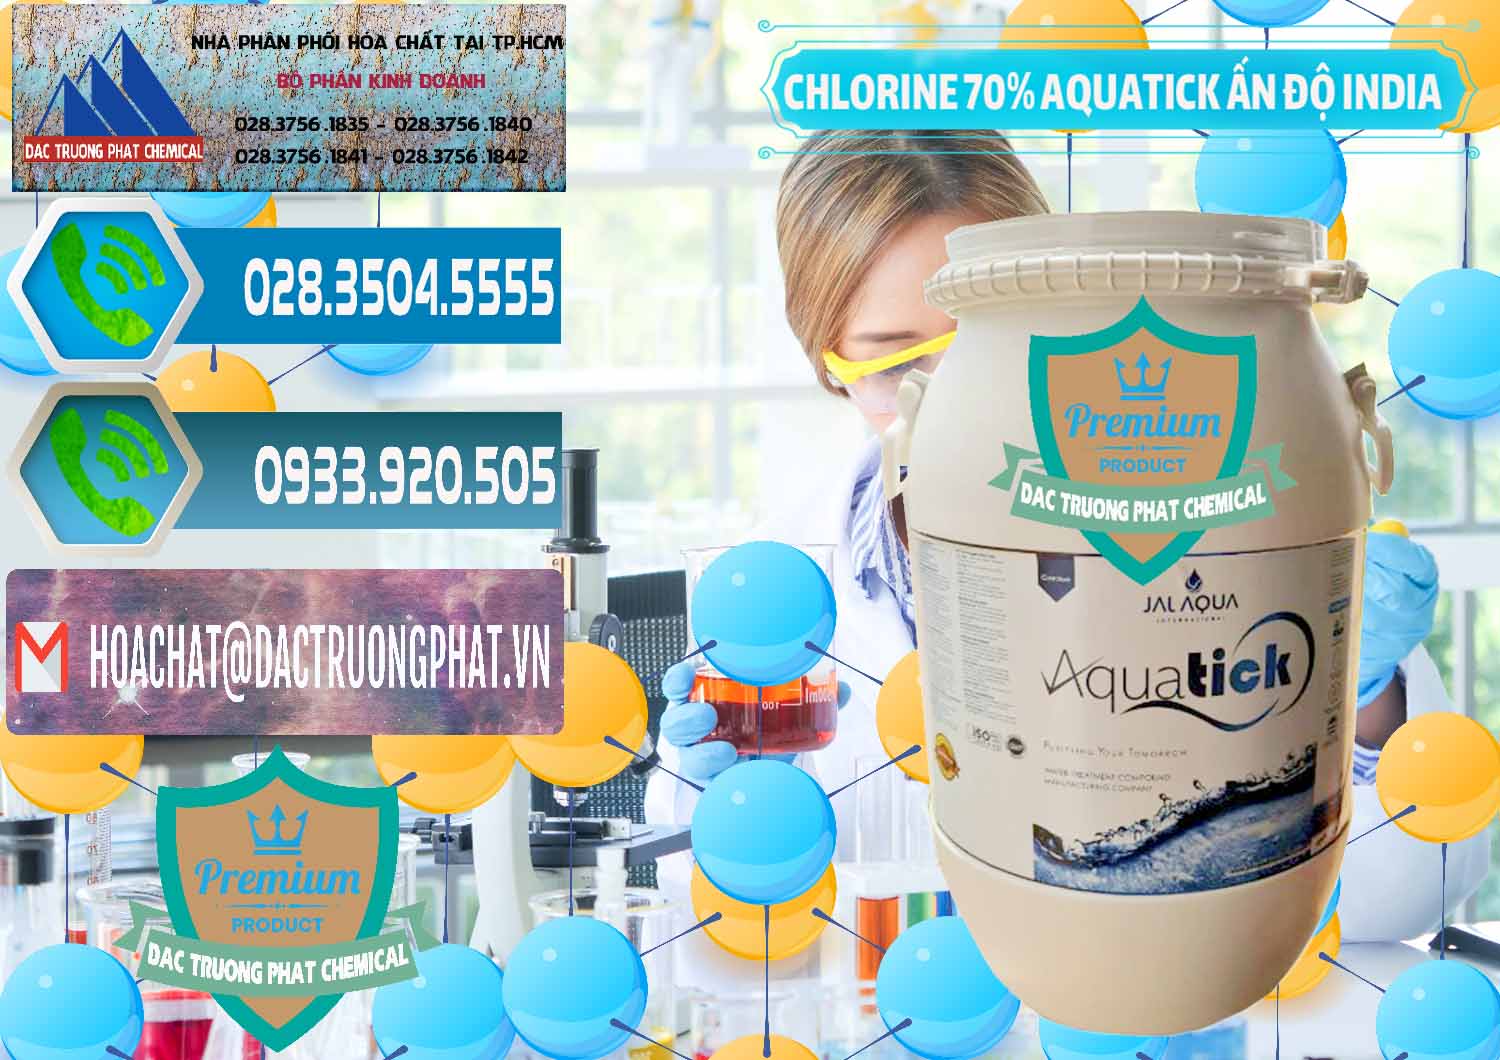 Cty cung cấp ( bán ) Chlorine – Clorin 70% Aquatick Jal Aqua Ấn Độ India - 0215 - Nơi chuyên phân phối _ cung ứng hóa chất tại TP.HCM - congtyhoachat.net